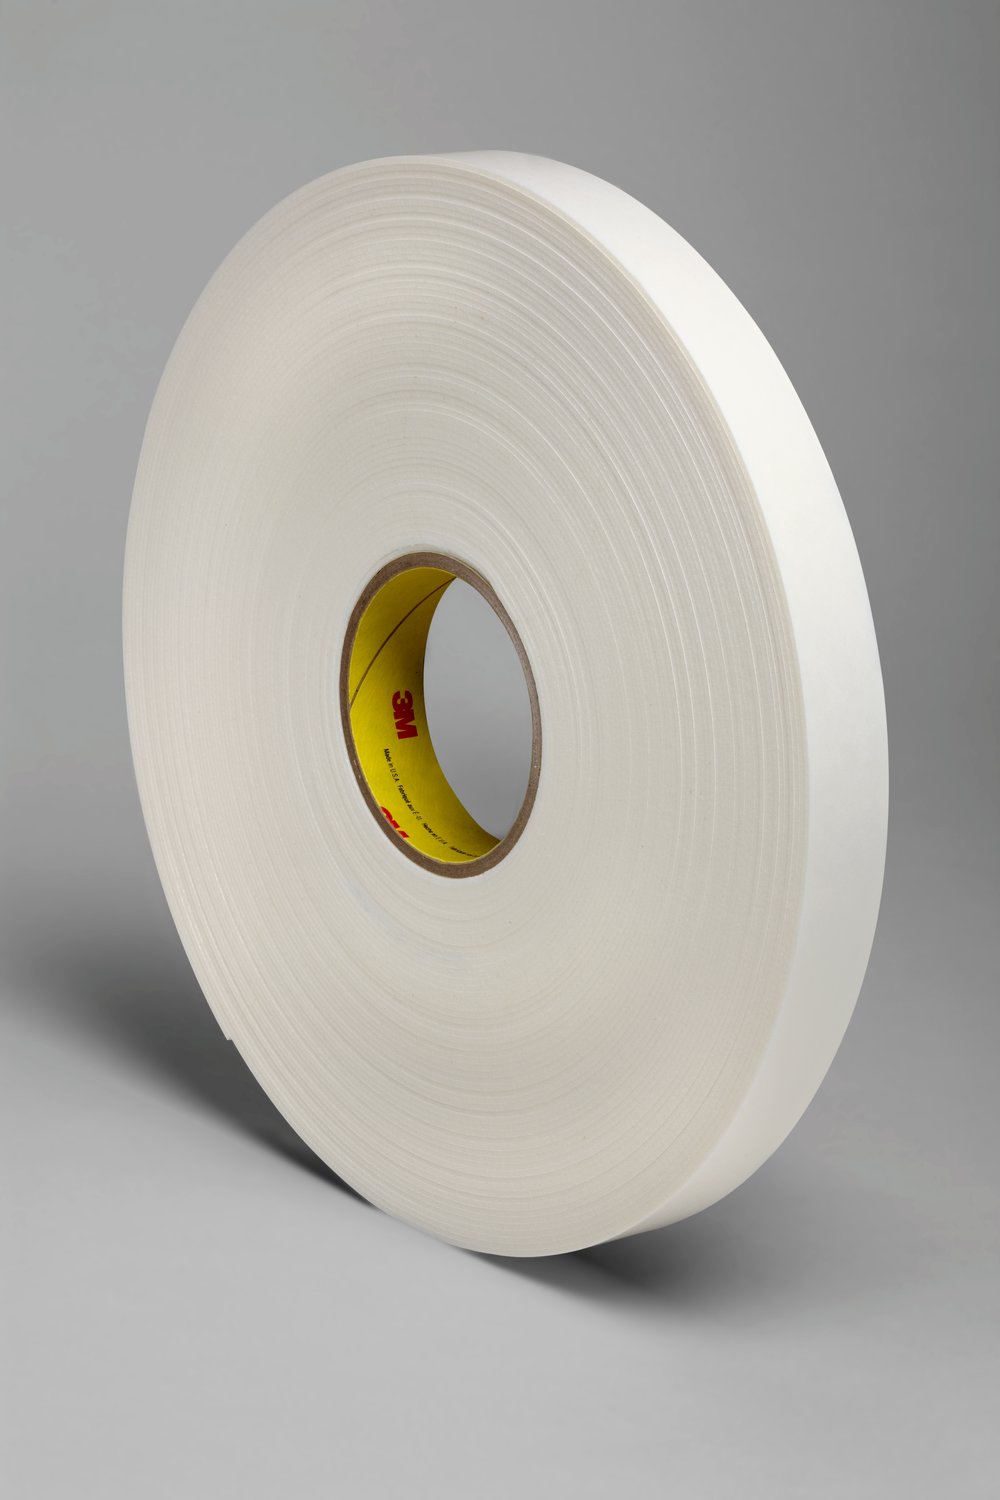 7000124259 - 3M Double Coated Polyethylene Foam Tape 4466, White, 2 in x 36 yd, 62
mil, 6 Rolls/Case